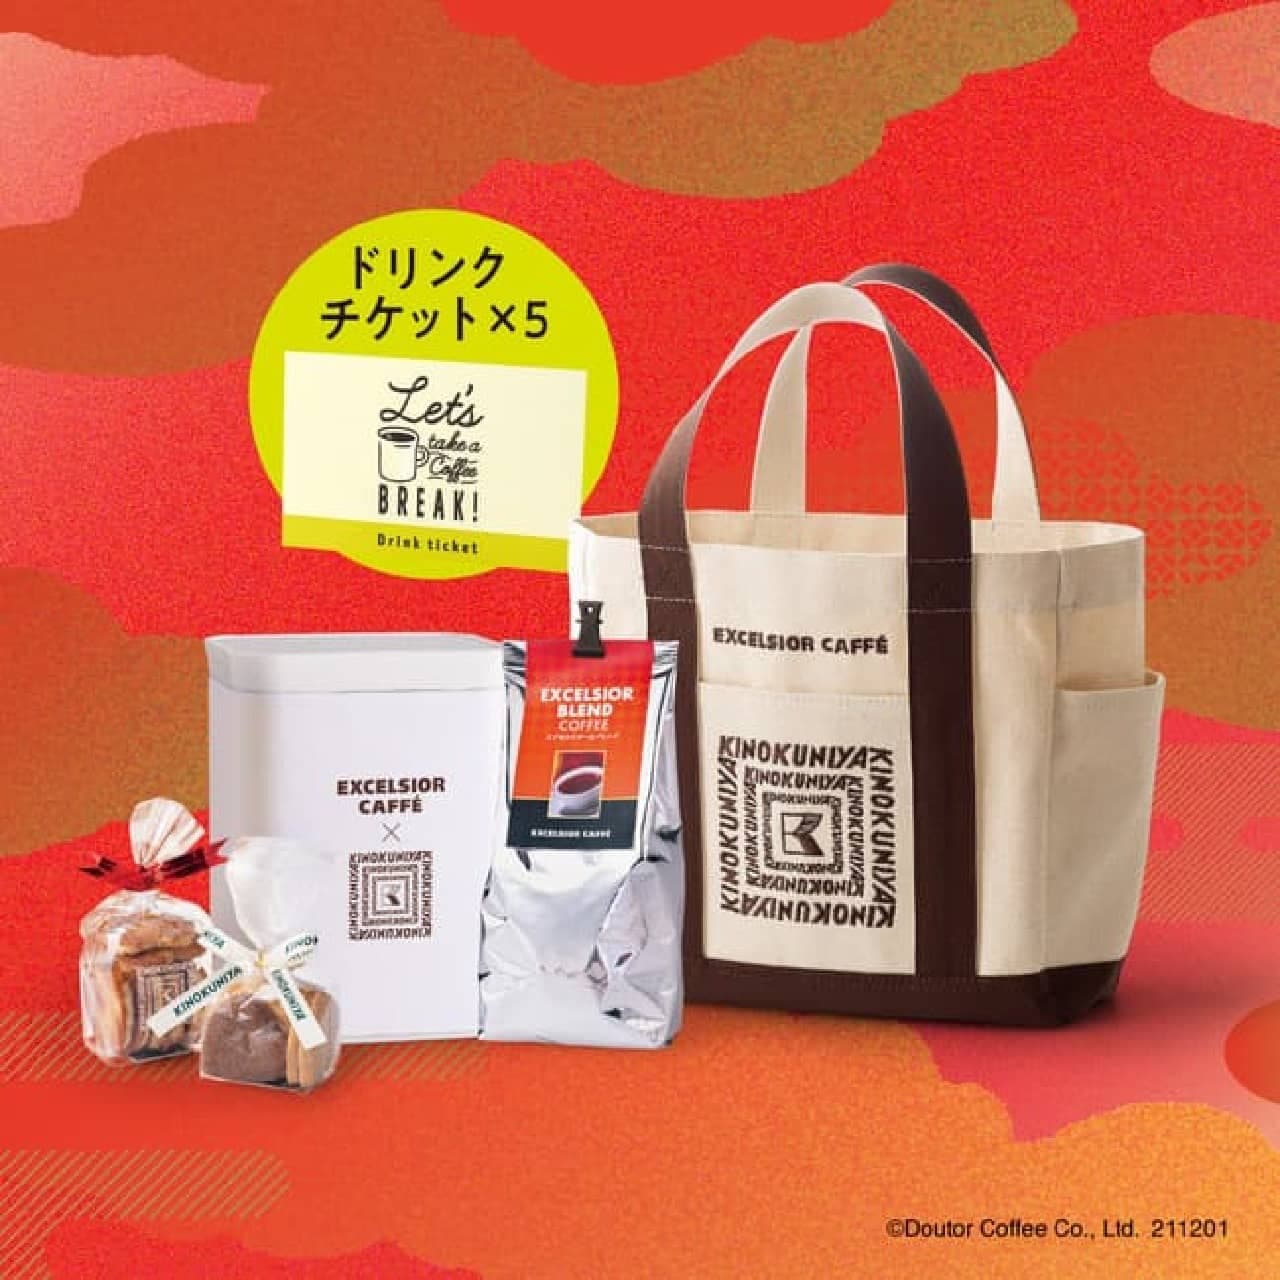 Excelsior Cafe Lucky Bag "2022 HAPPY BAG" Kinokuniya Collaboration Tote Bag with Kinokuniya Baked Goods!